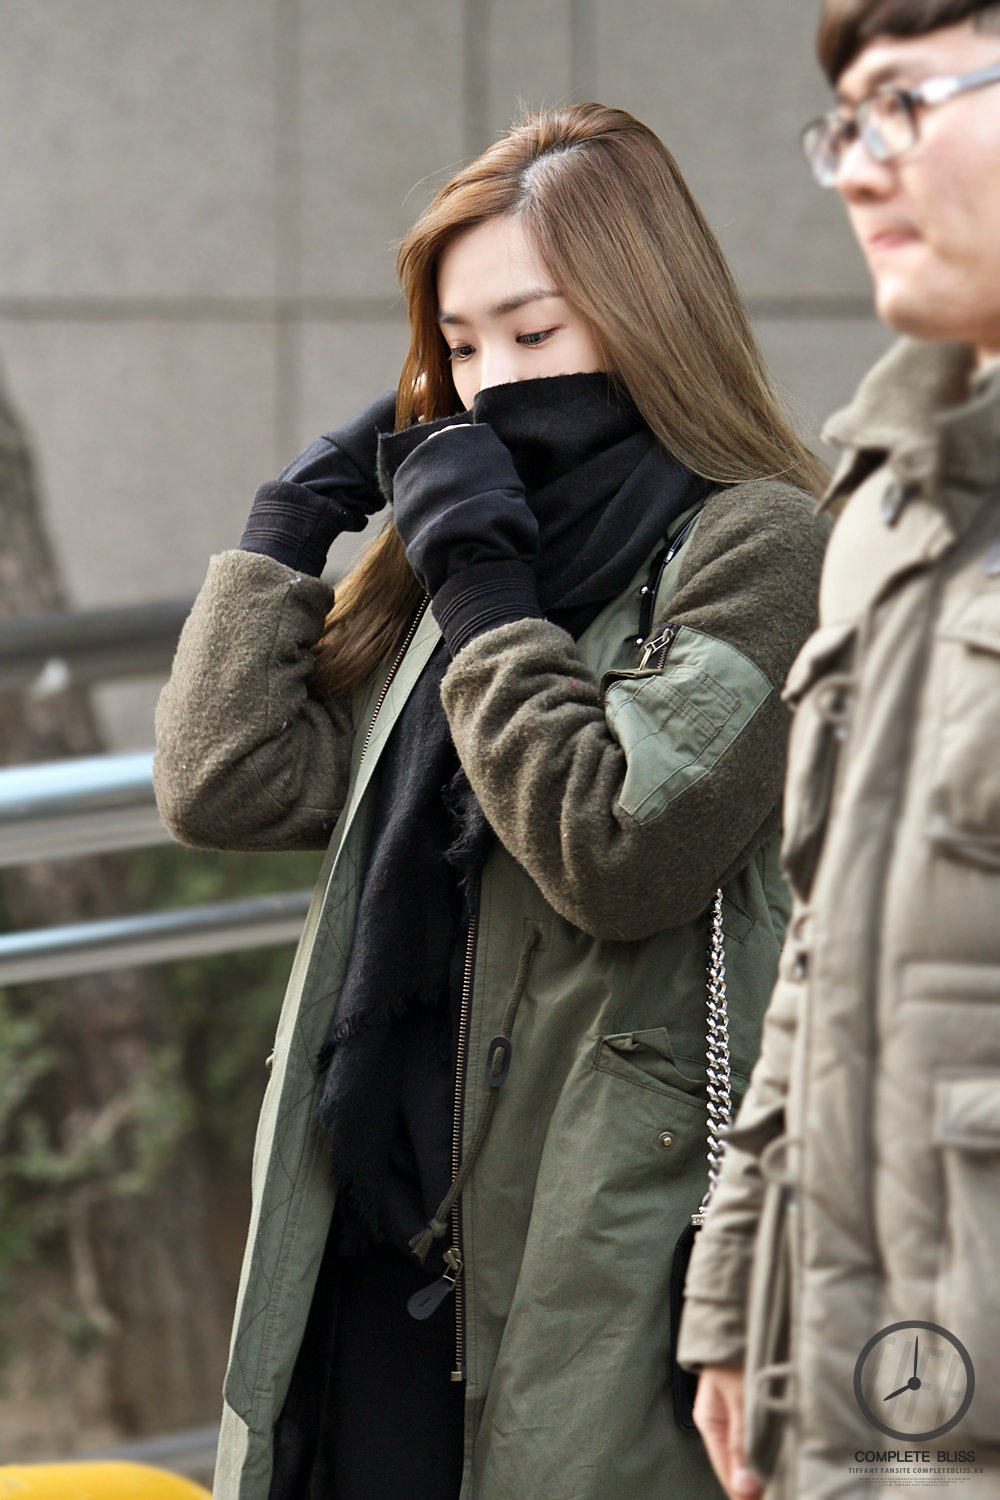 [PIC][19-12-2014]TaeTiSeo xuất hiện tại tòa nhà KBS để tham dự "2014 KBS Music Bank Year End Closing Special" vào sáng nay 15448653324_3dc78cbb10_o